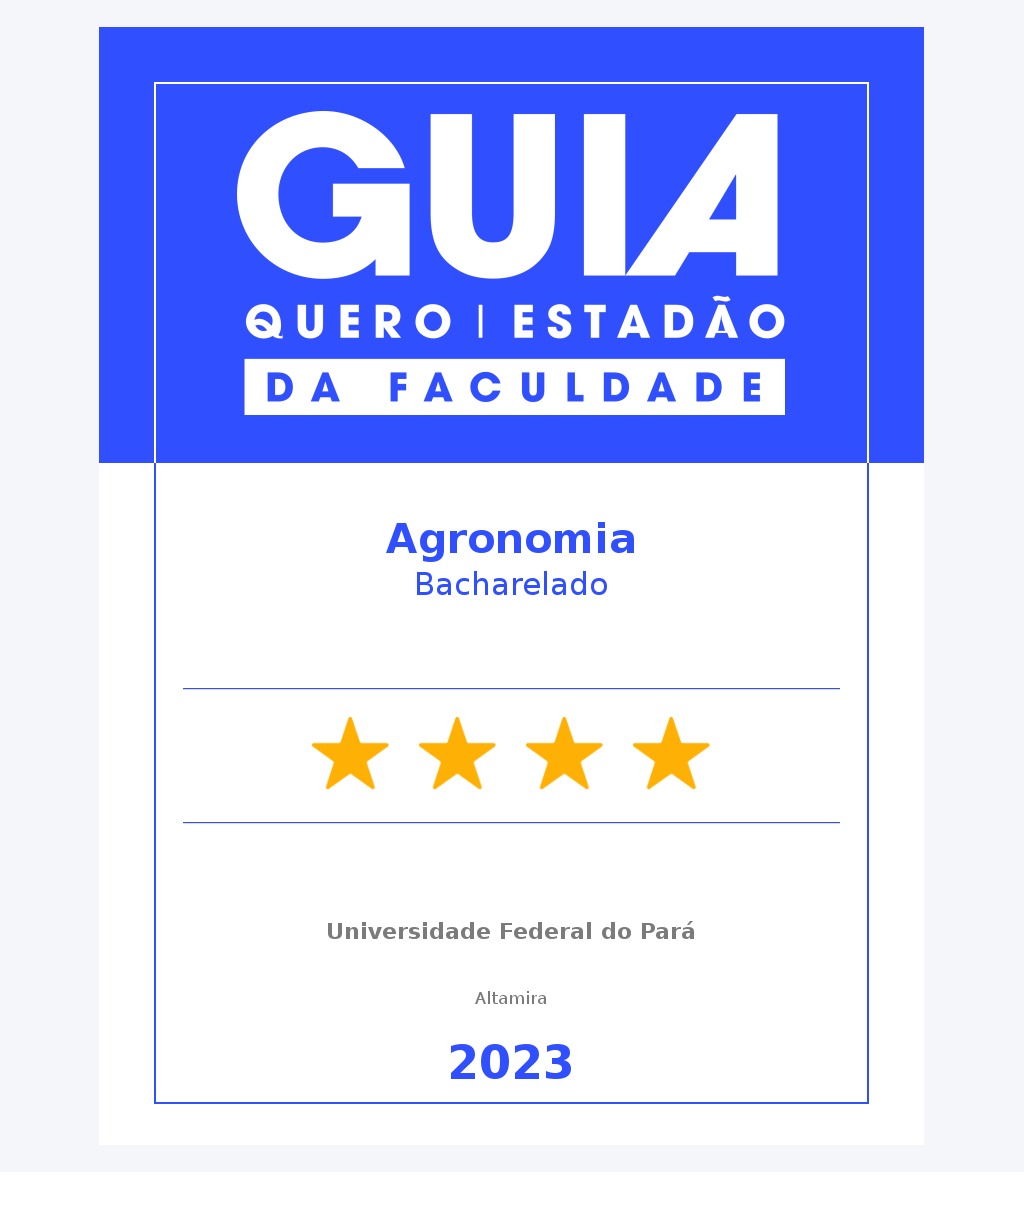 Curso de Agronomia da UFPA - Campus de Altamira é nota 4 pelo Guia da Faculdade Estadão!